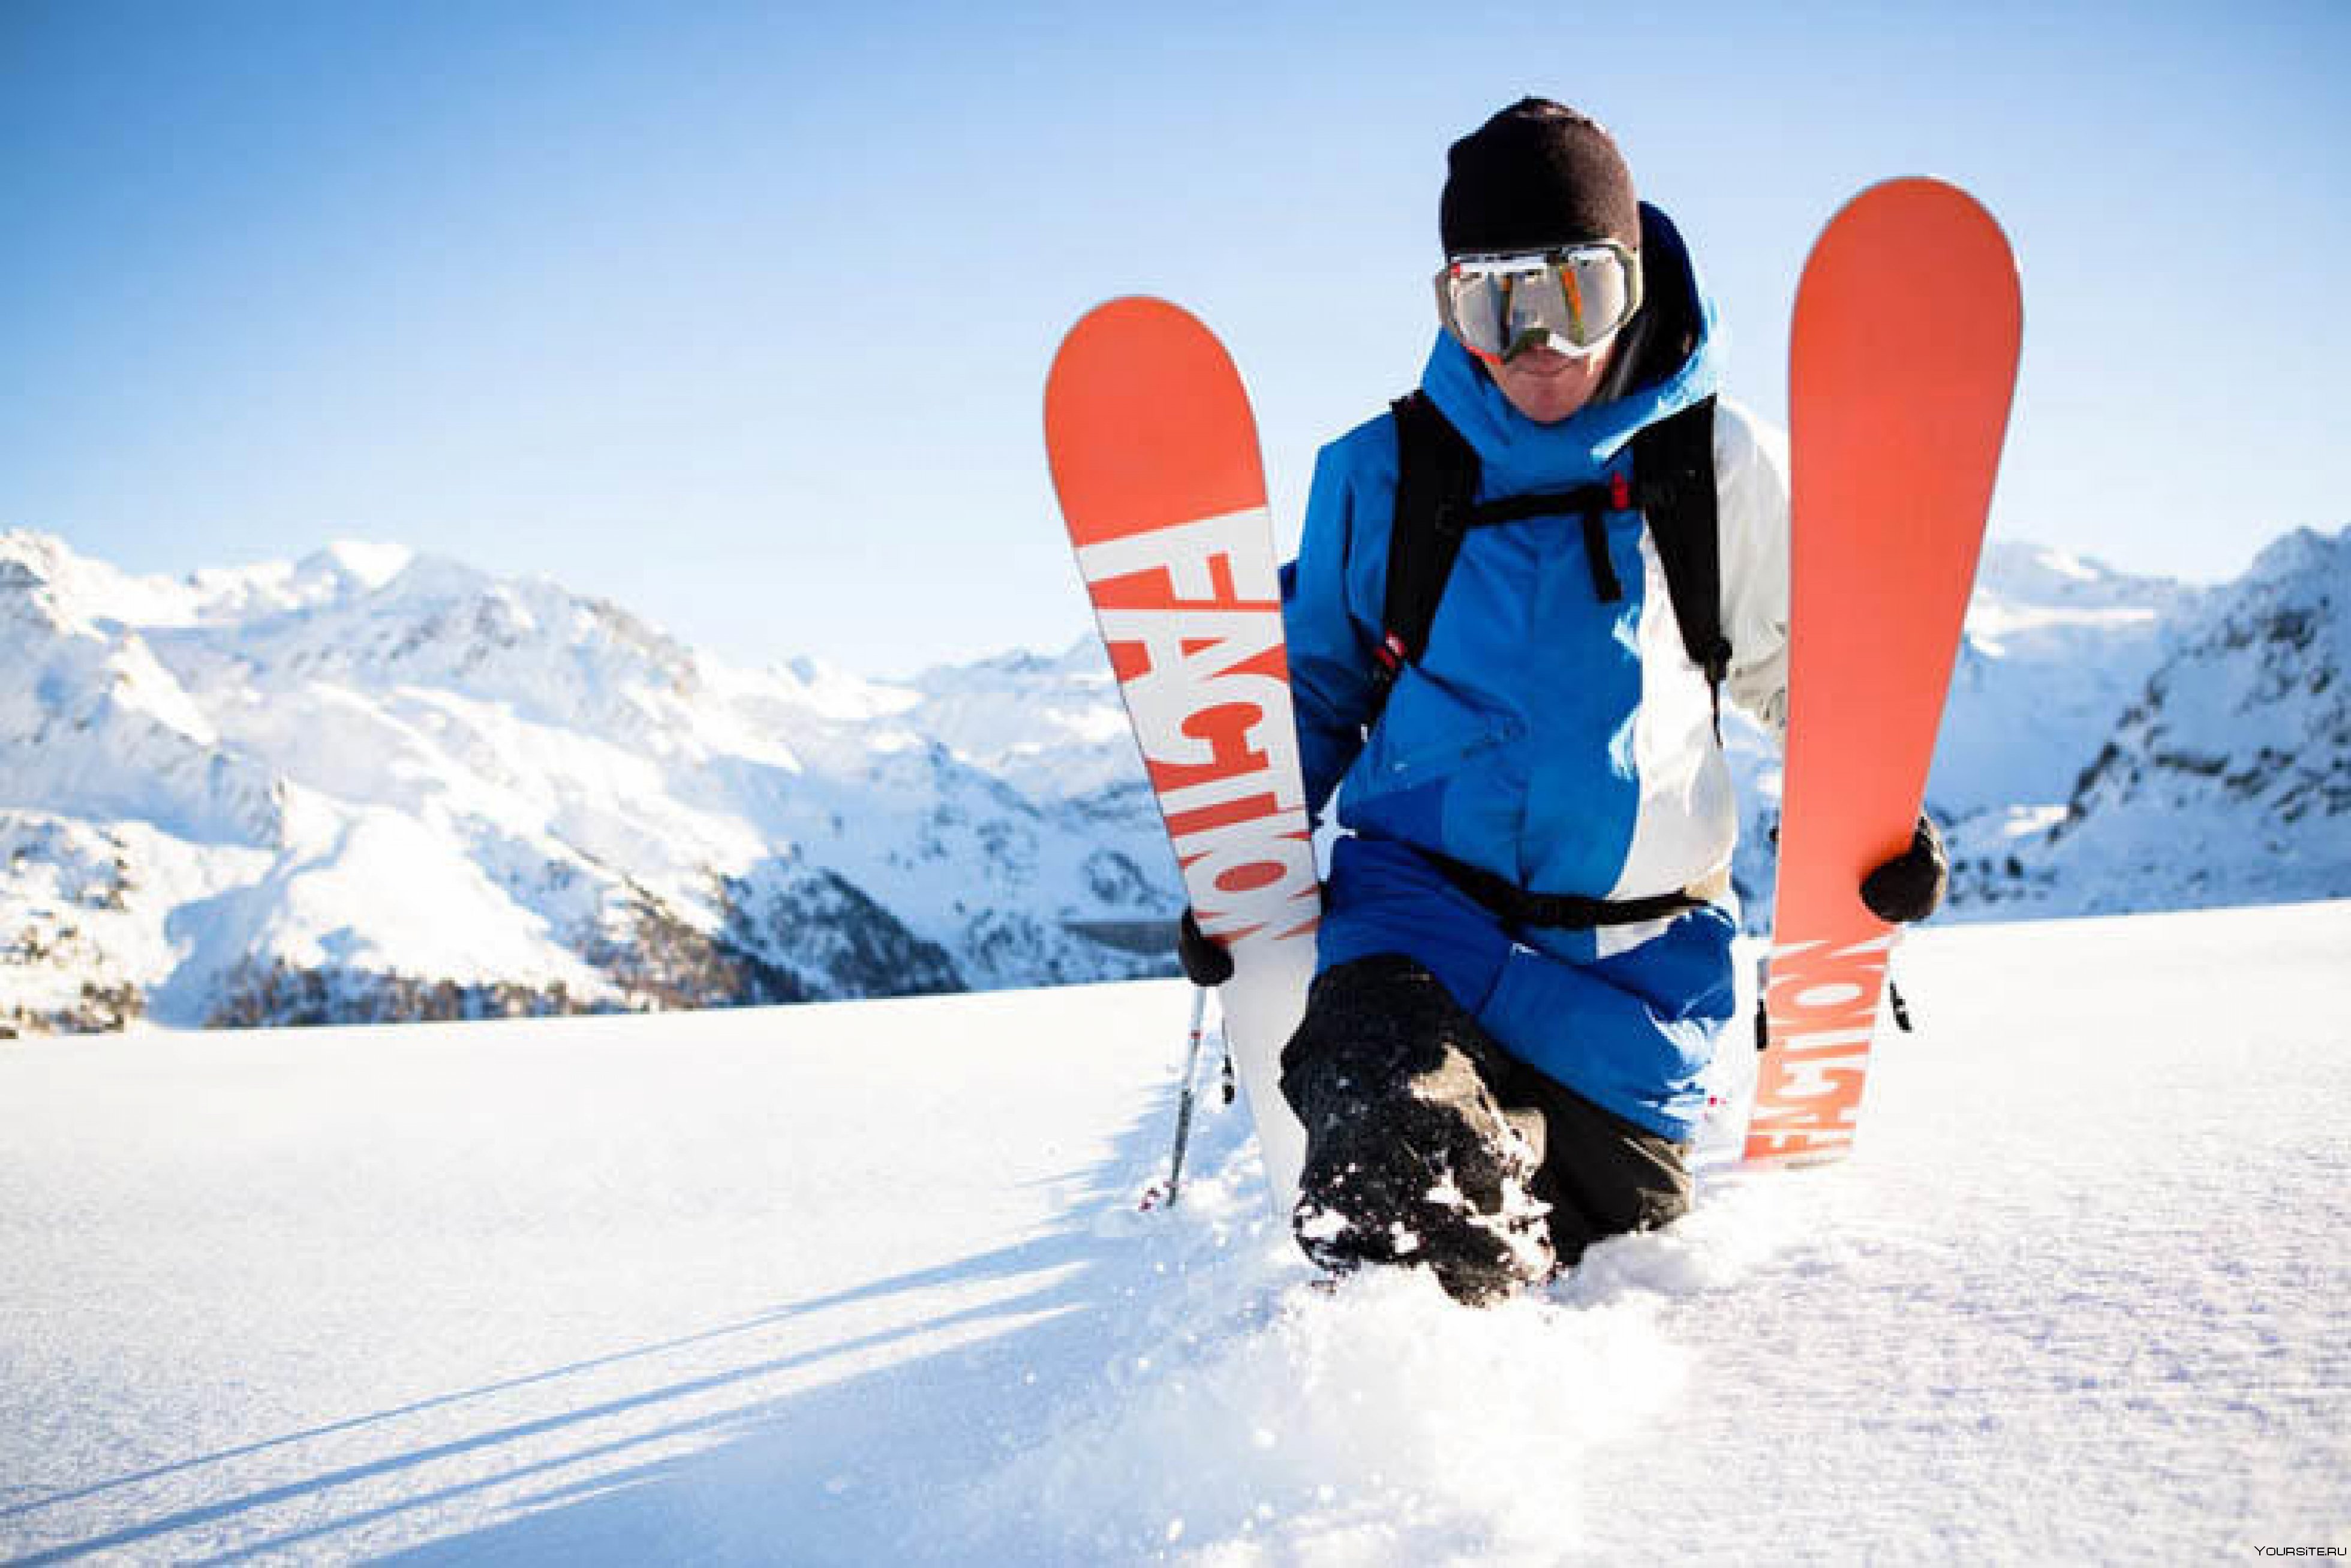 Skiing where. Candide Thovex лыжник. Кандид Товекс. Горные лыжи и сноуборд. Горнолыжники и сноубордисты.